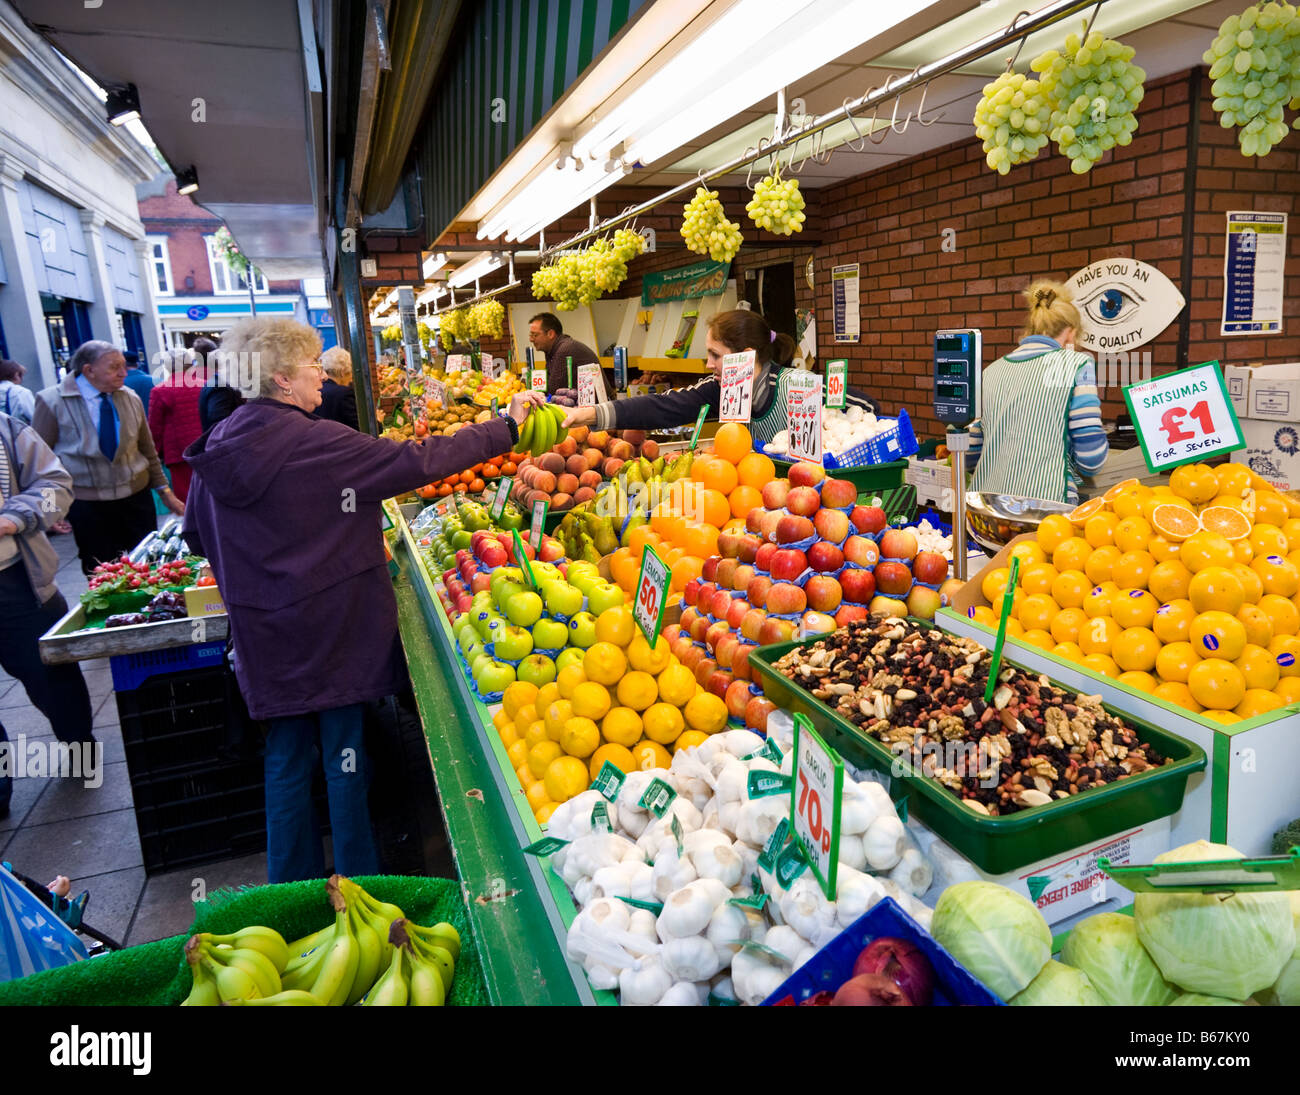 Marché intérieur britannique avec le client d'acheter des fruits et légumes frais d'un décrochage, England, UK Banque D'Images